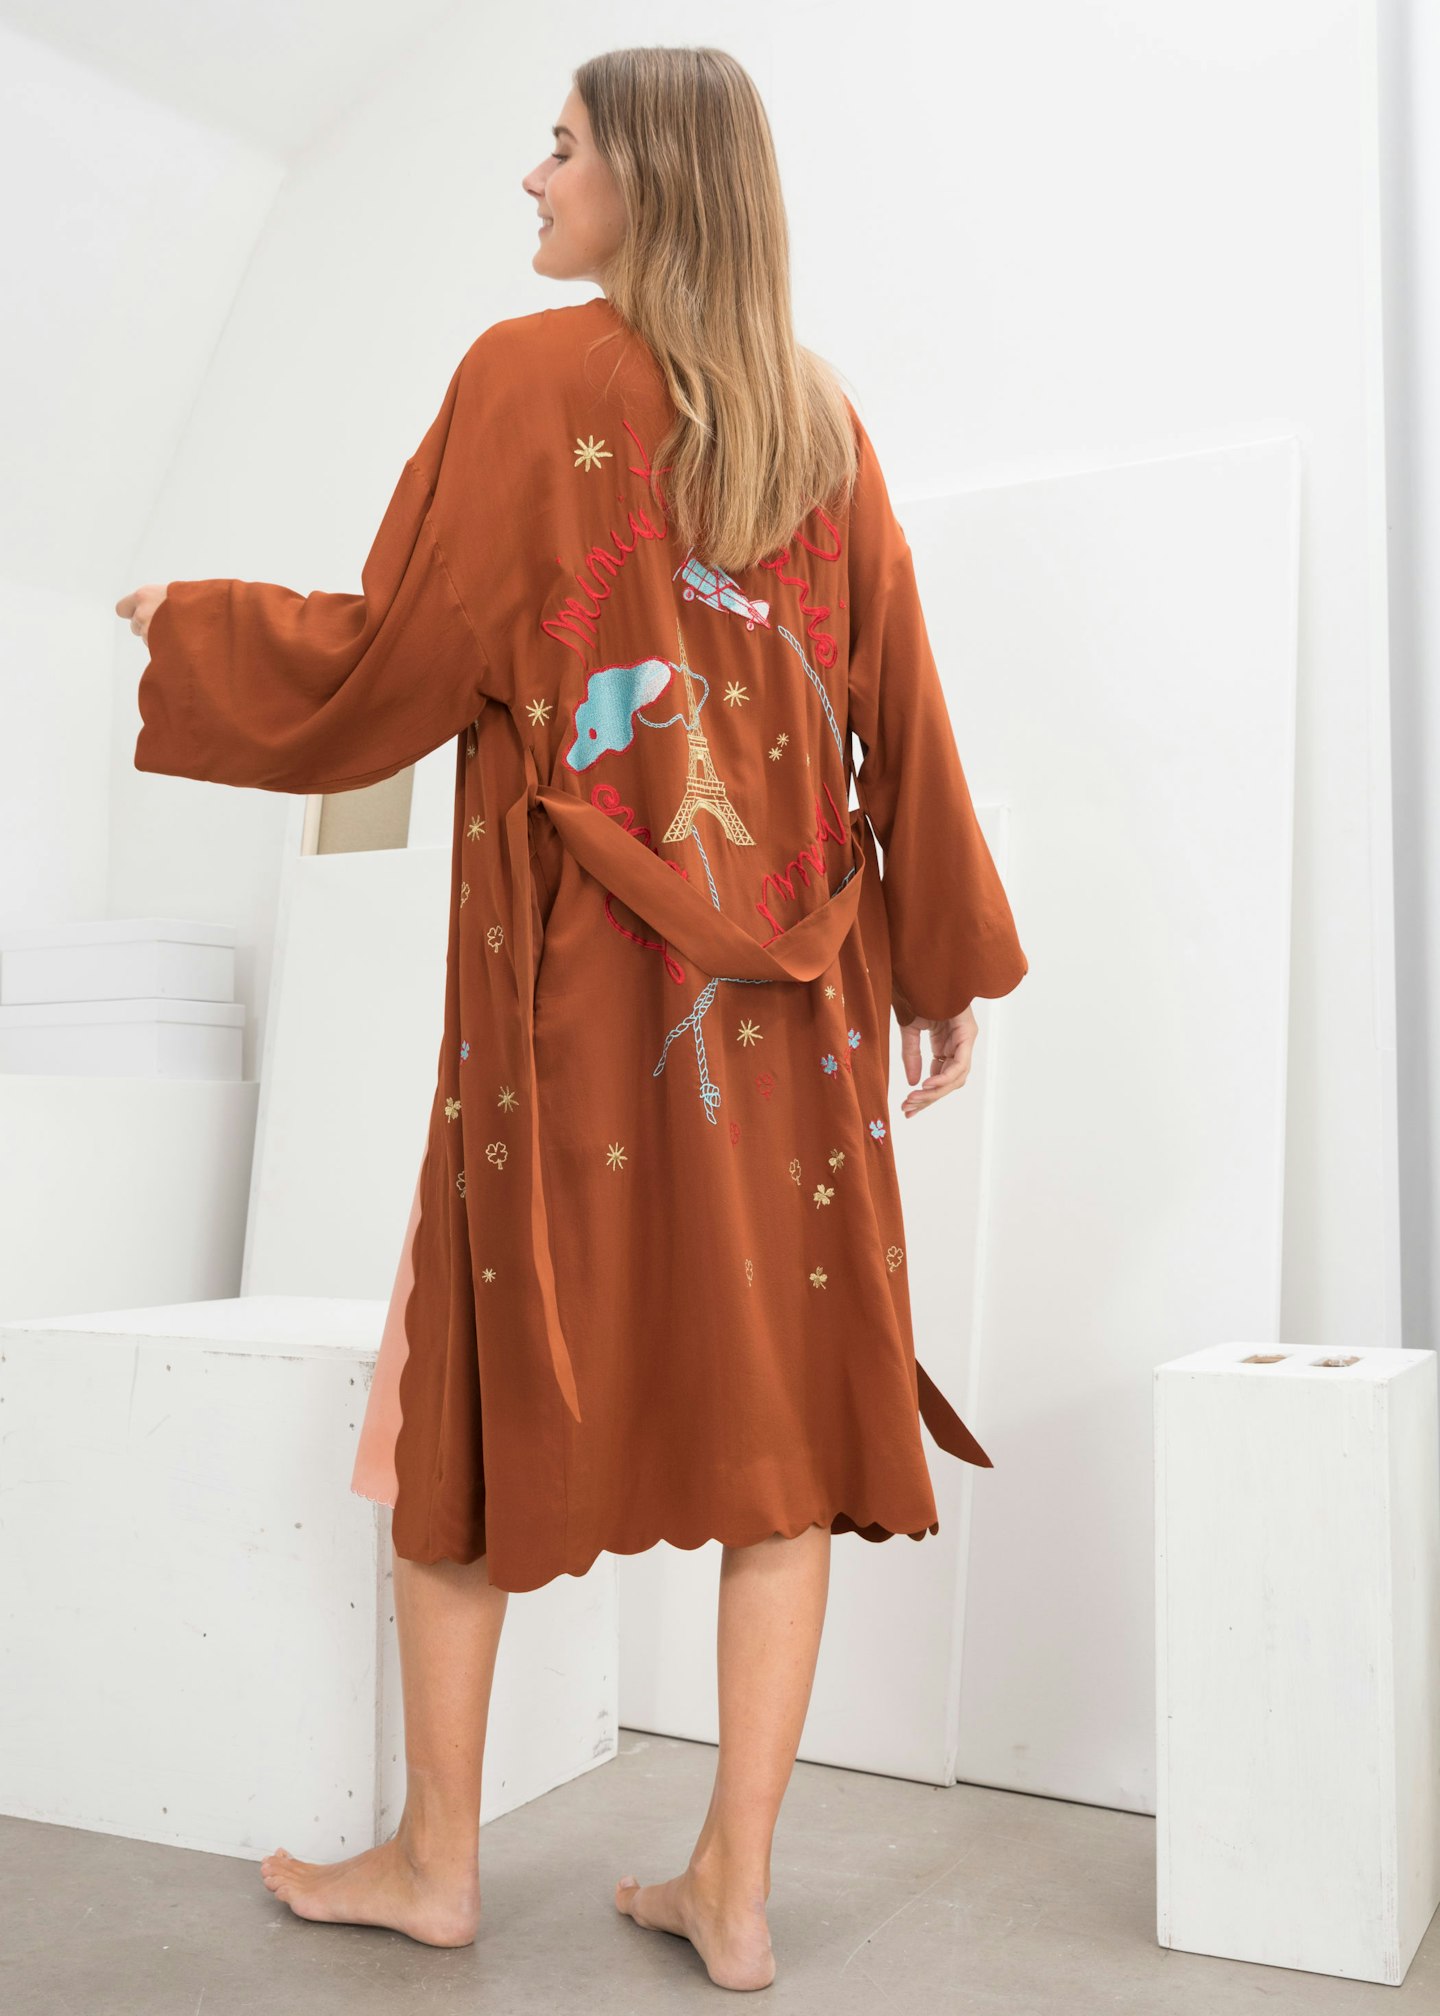 & Other Stories, Scalloped Silk Kimono Robe, £169